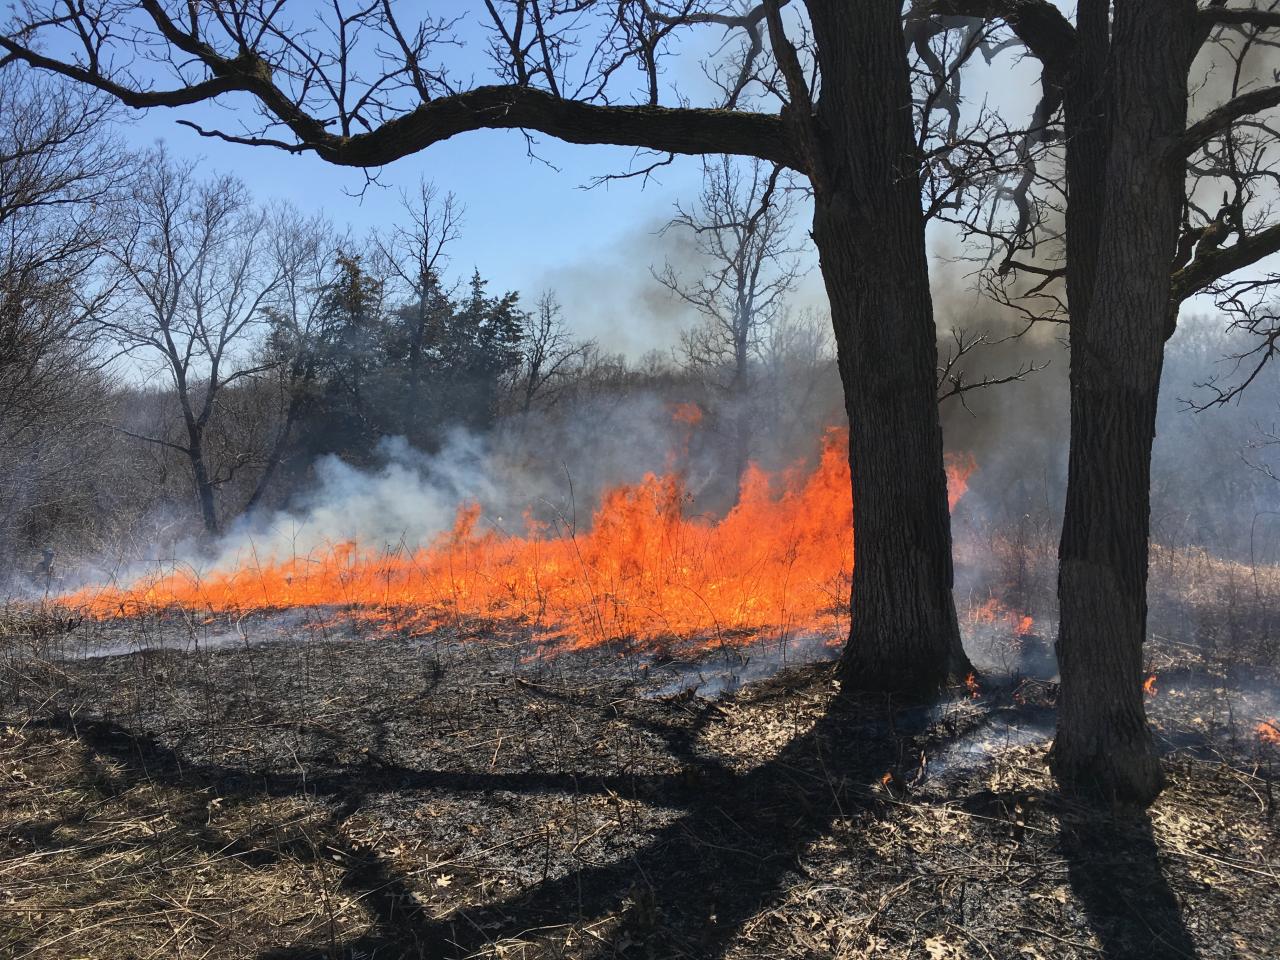 An April prescribed burn rolls through a blufftop prairie at the Flint Hills Pind Bend Bluffs property.